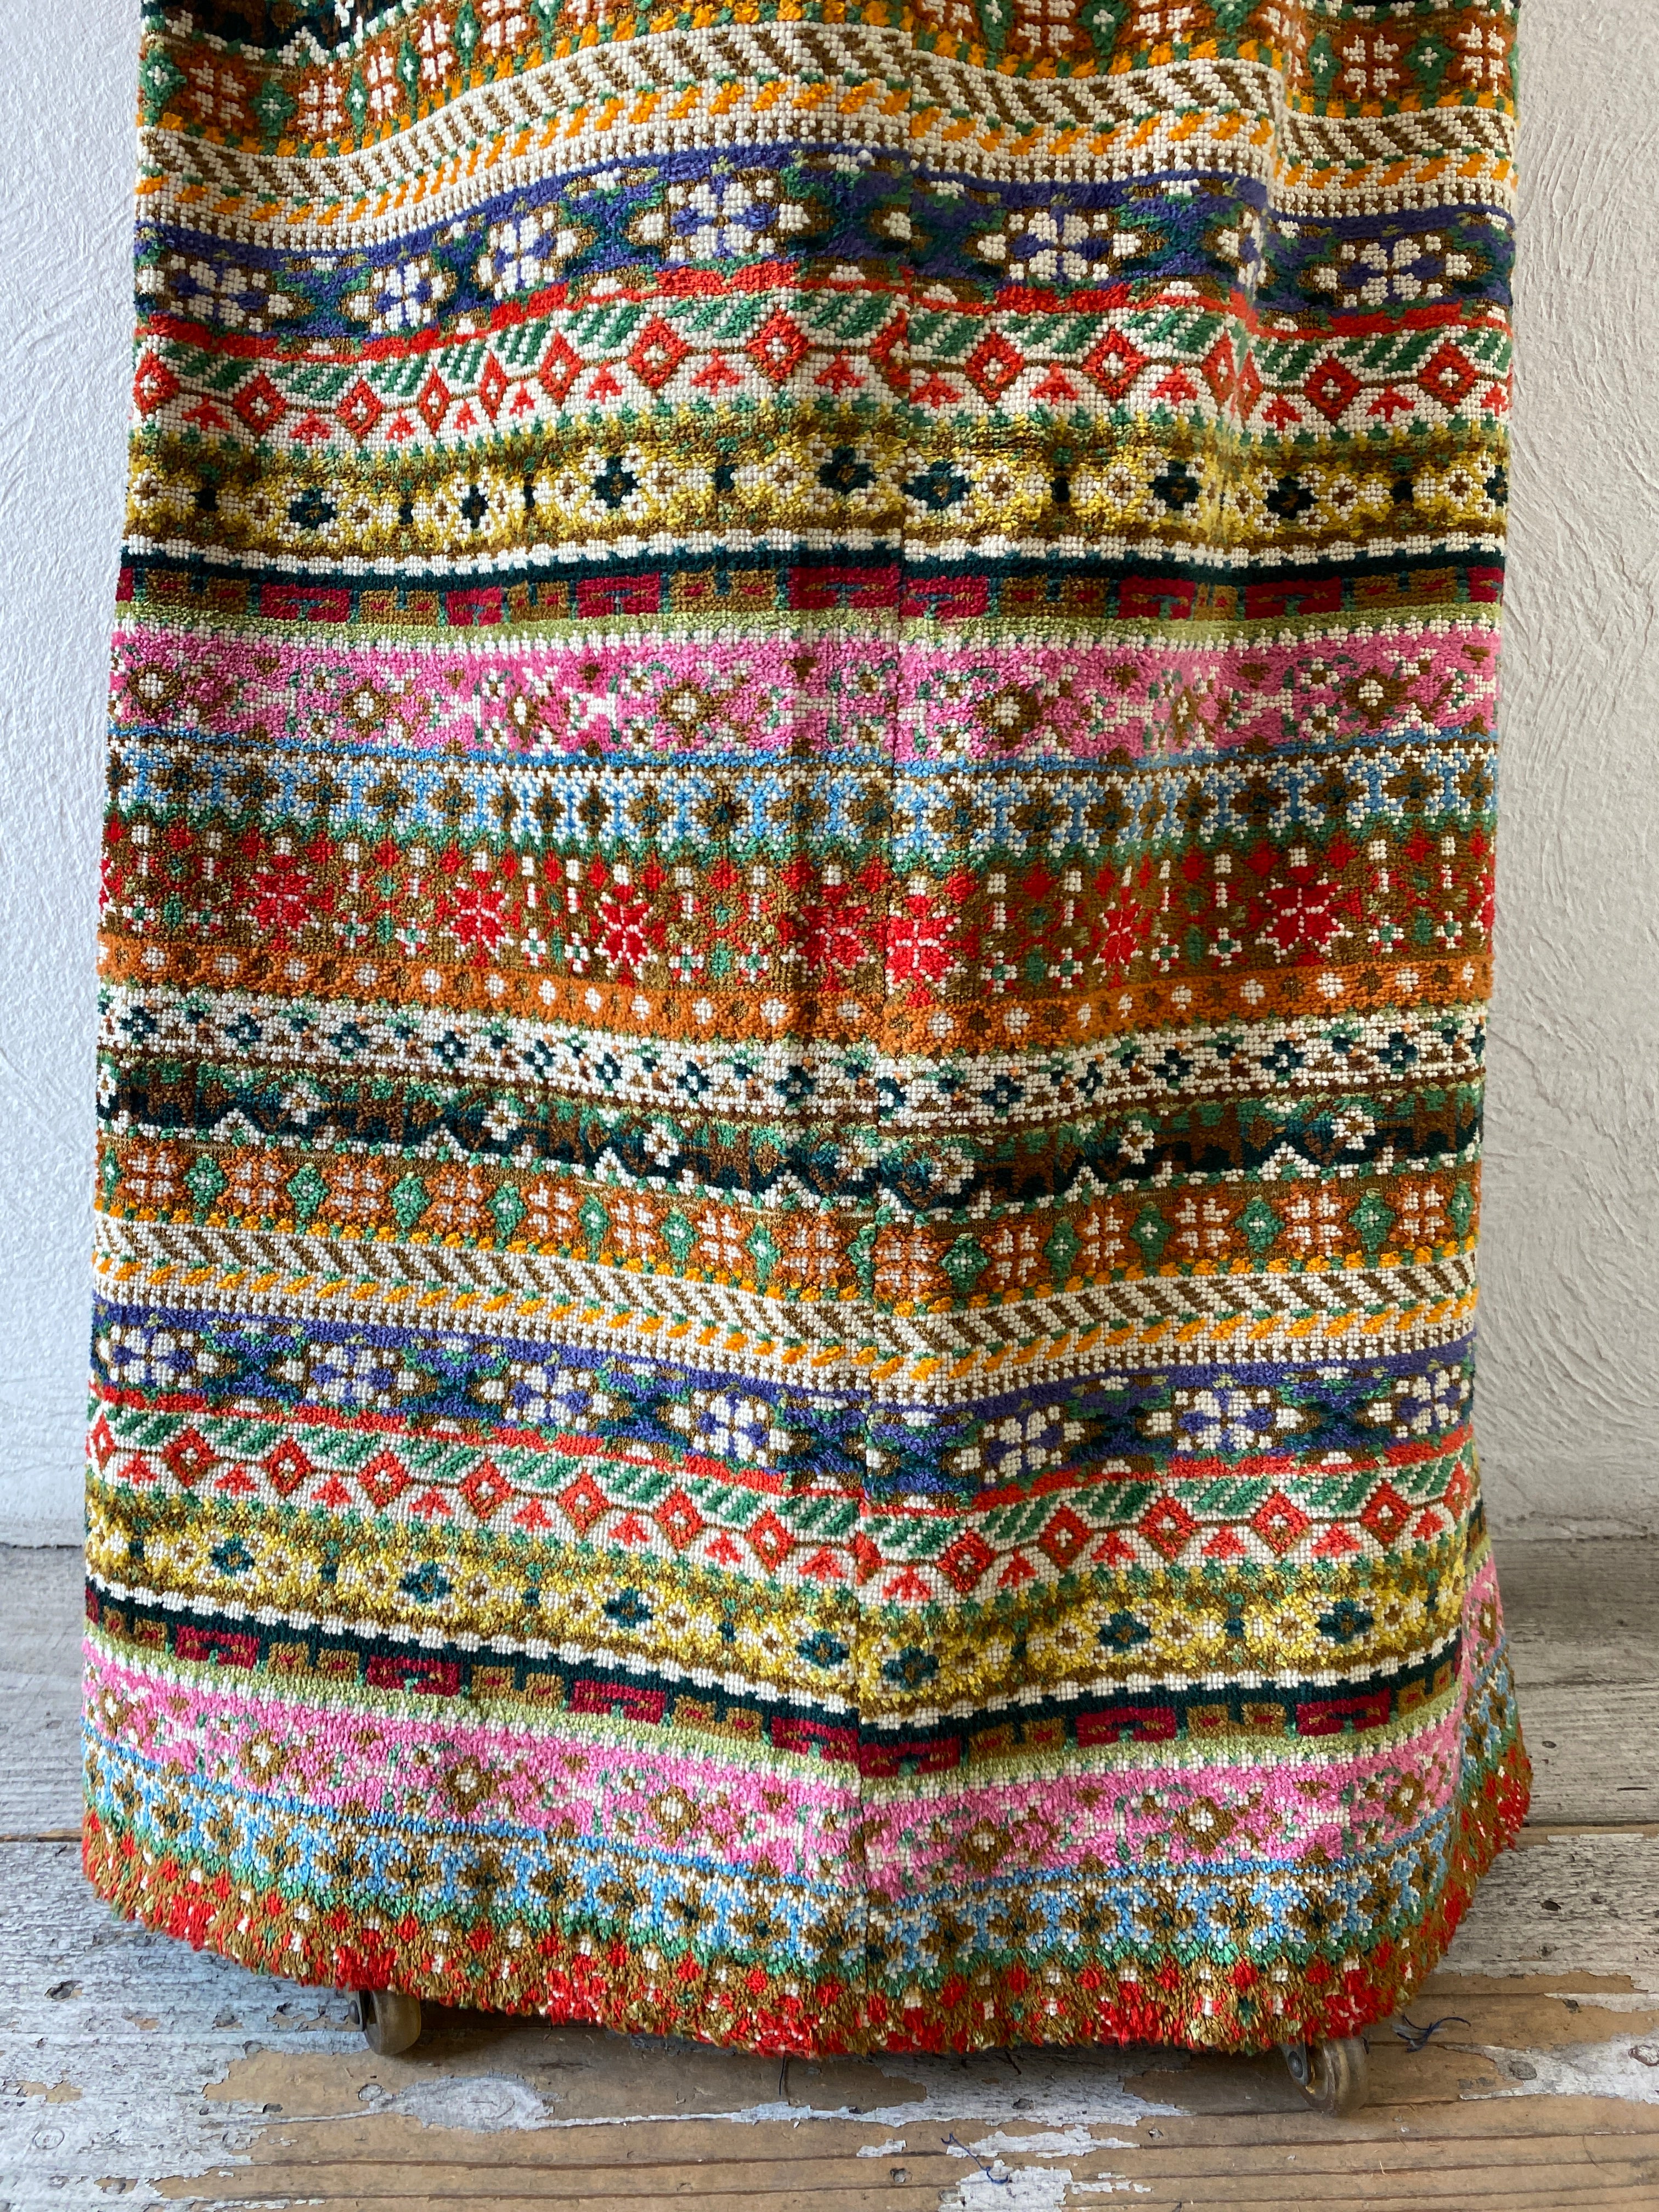 vintage fabric skirt